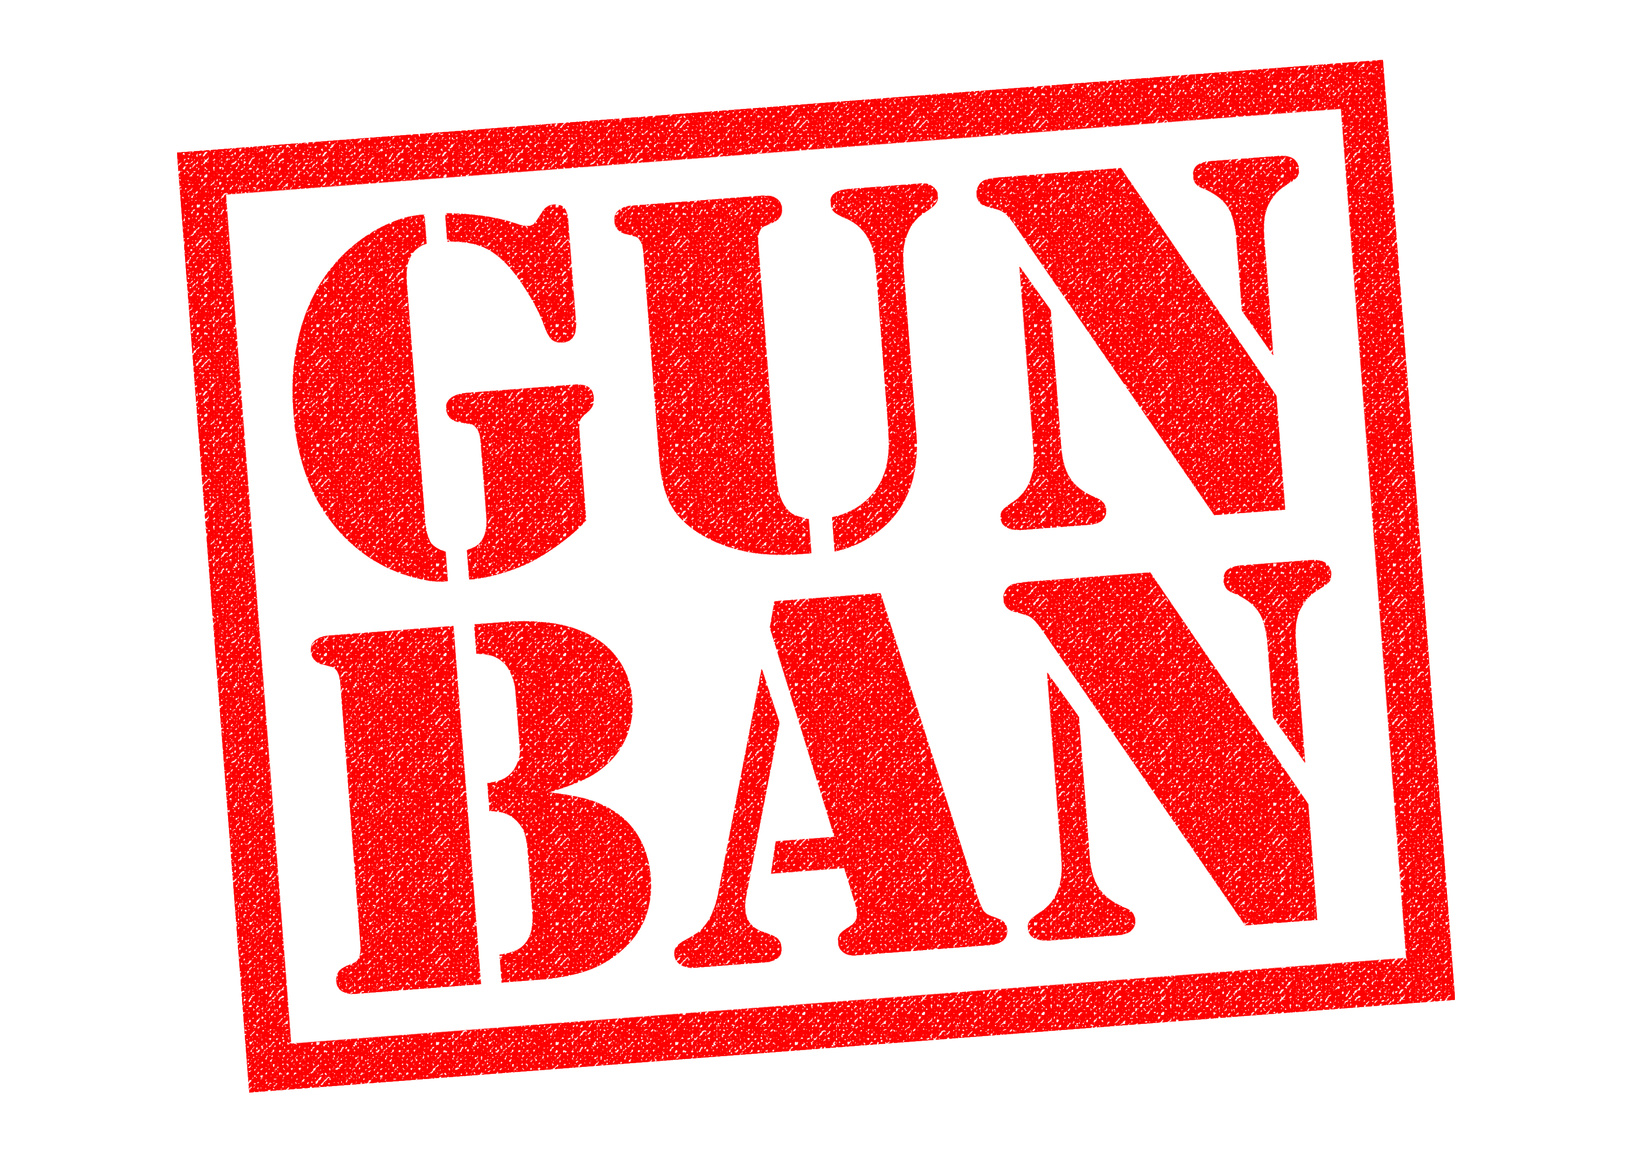 Ban name. Ban Gun. Стоп бан. No Gun no fun. Ган бан.